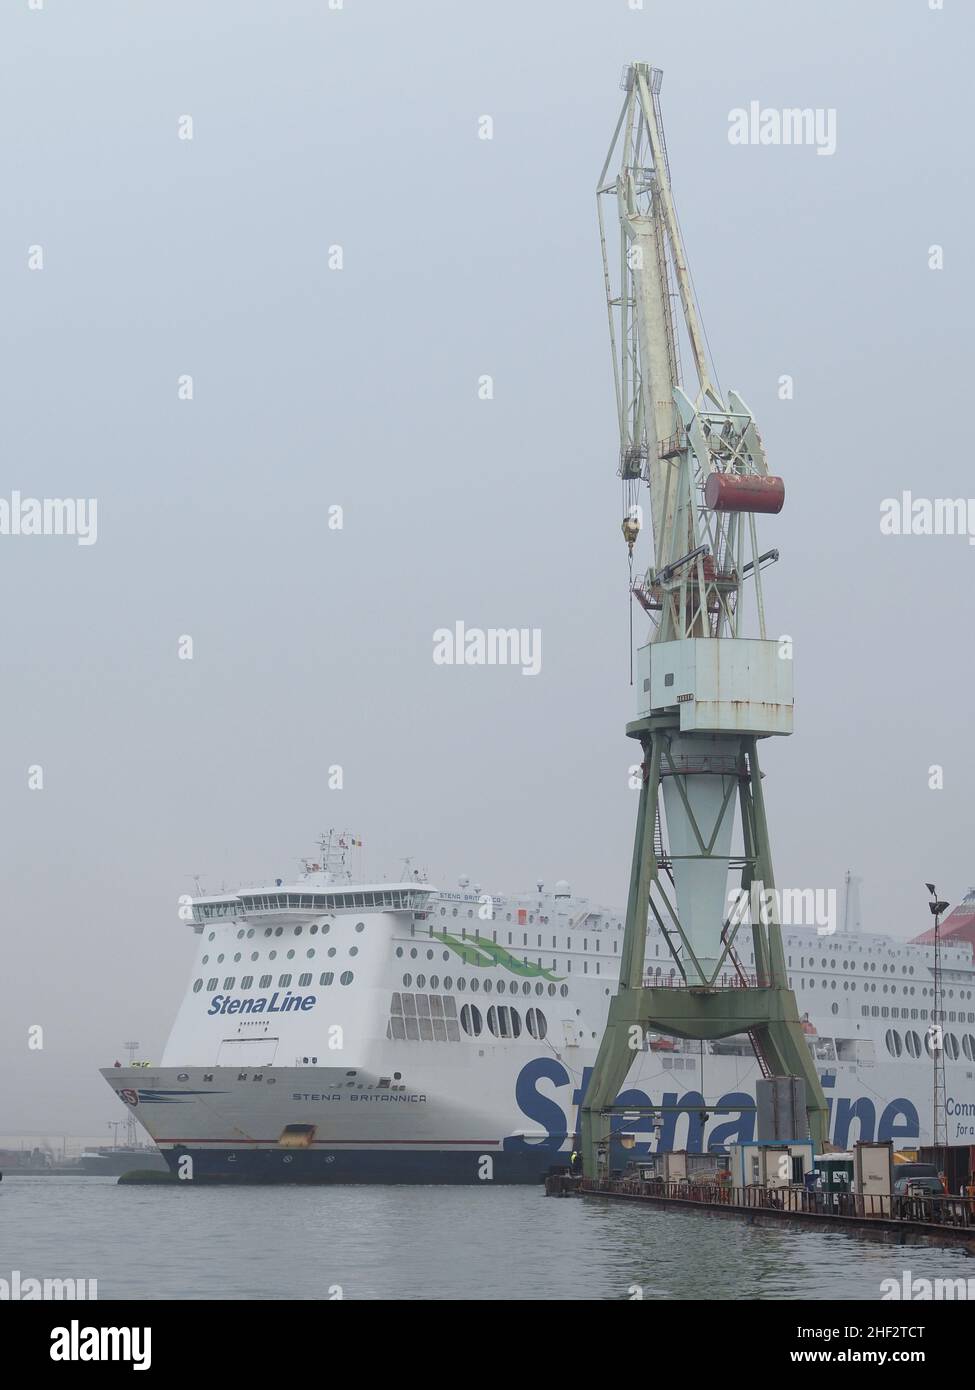 El ferry de la línea de Stena Stena Brittanica se está maniobrando en un muelle seco en el puerto de Amberes, Bélgica Foto de stock